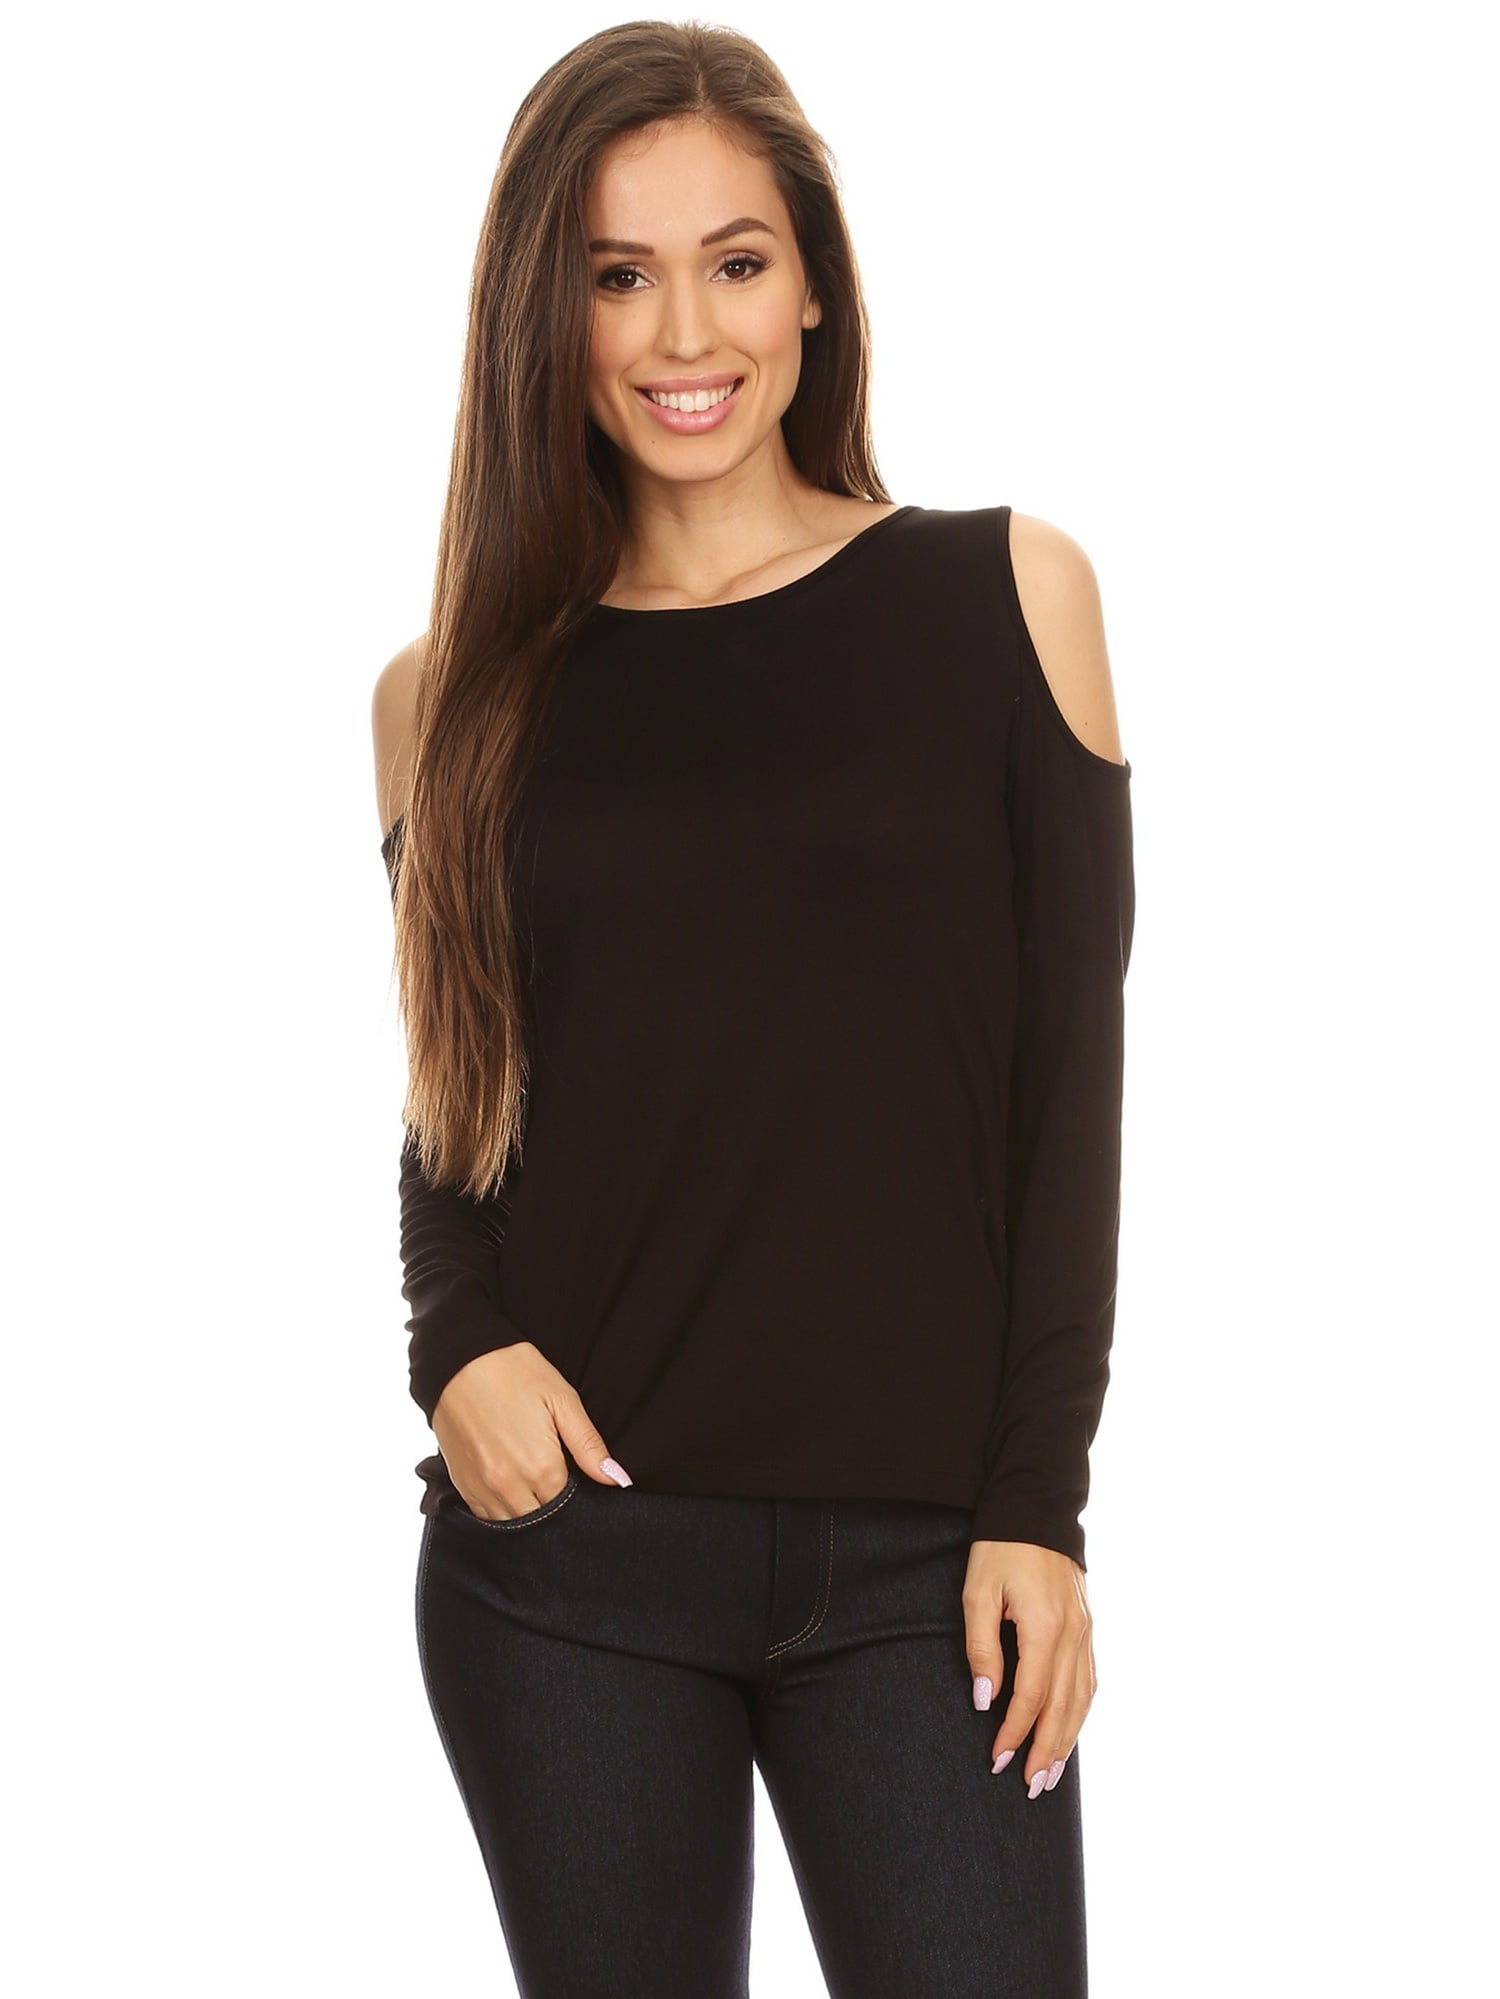 Women's Long Sleeve Cold Shoulder Knit Top (Black, Large) - Walmart.com